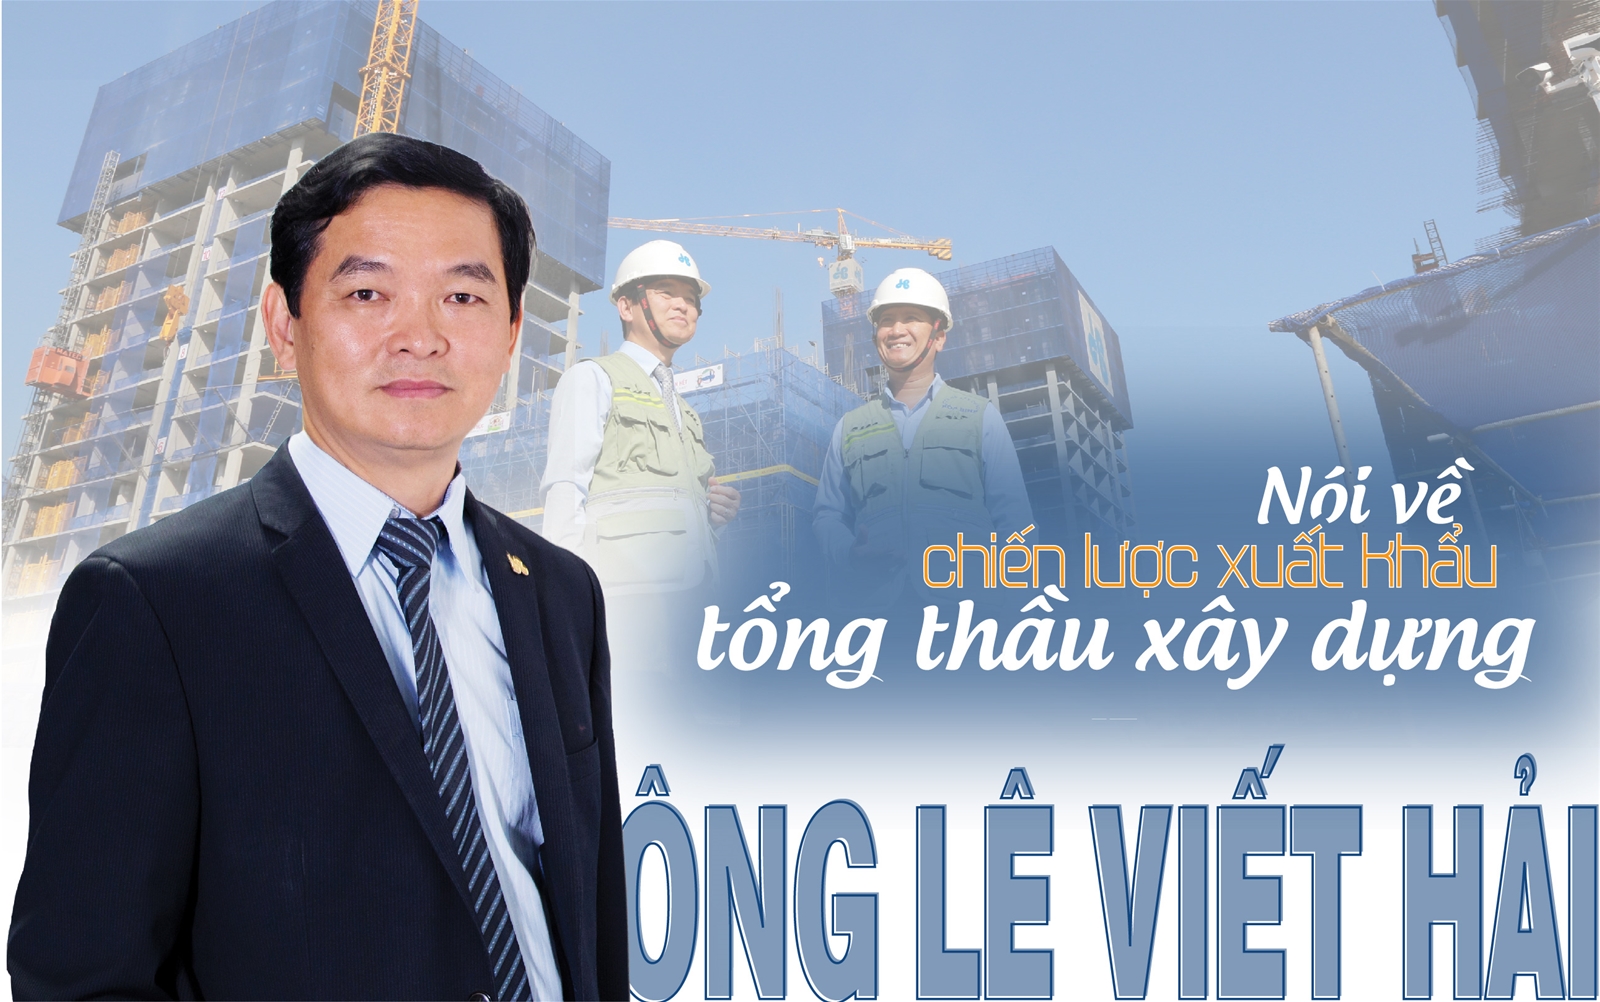 Ông Lê Viết Hải nói về chiến lược xuất khẩu tổng thầu xây dựng